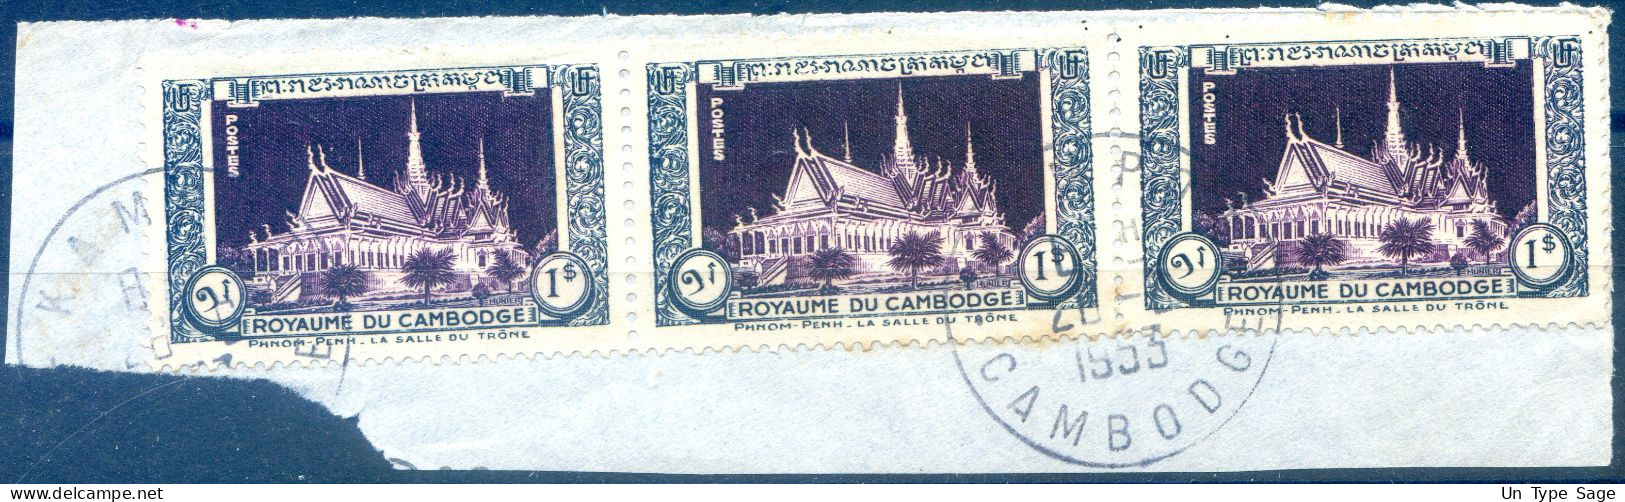 Cambodge, TAD PHNOM PENH 1953 - (F359) - Cambodge